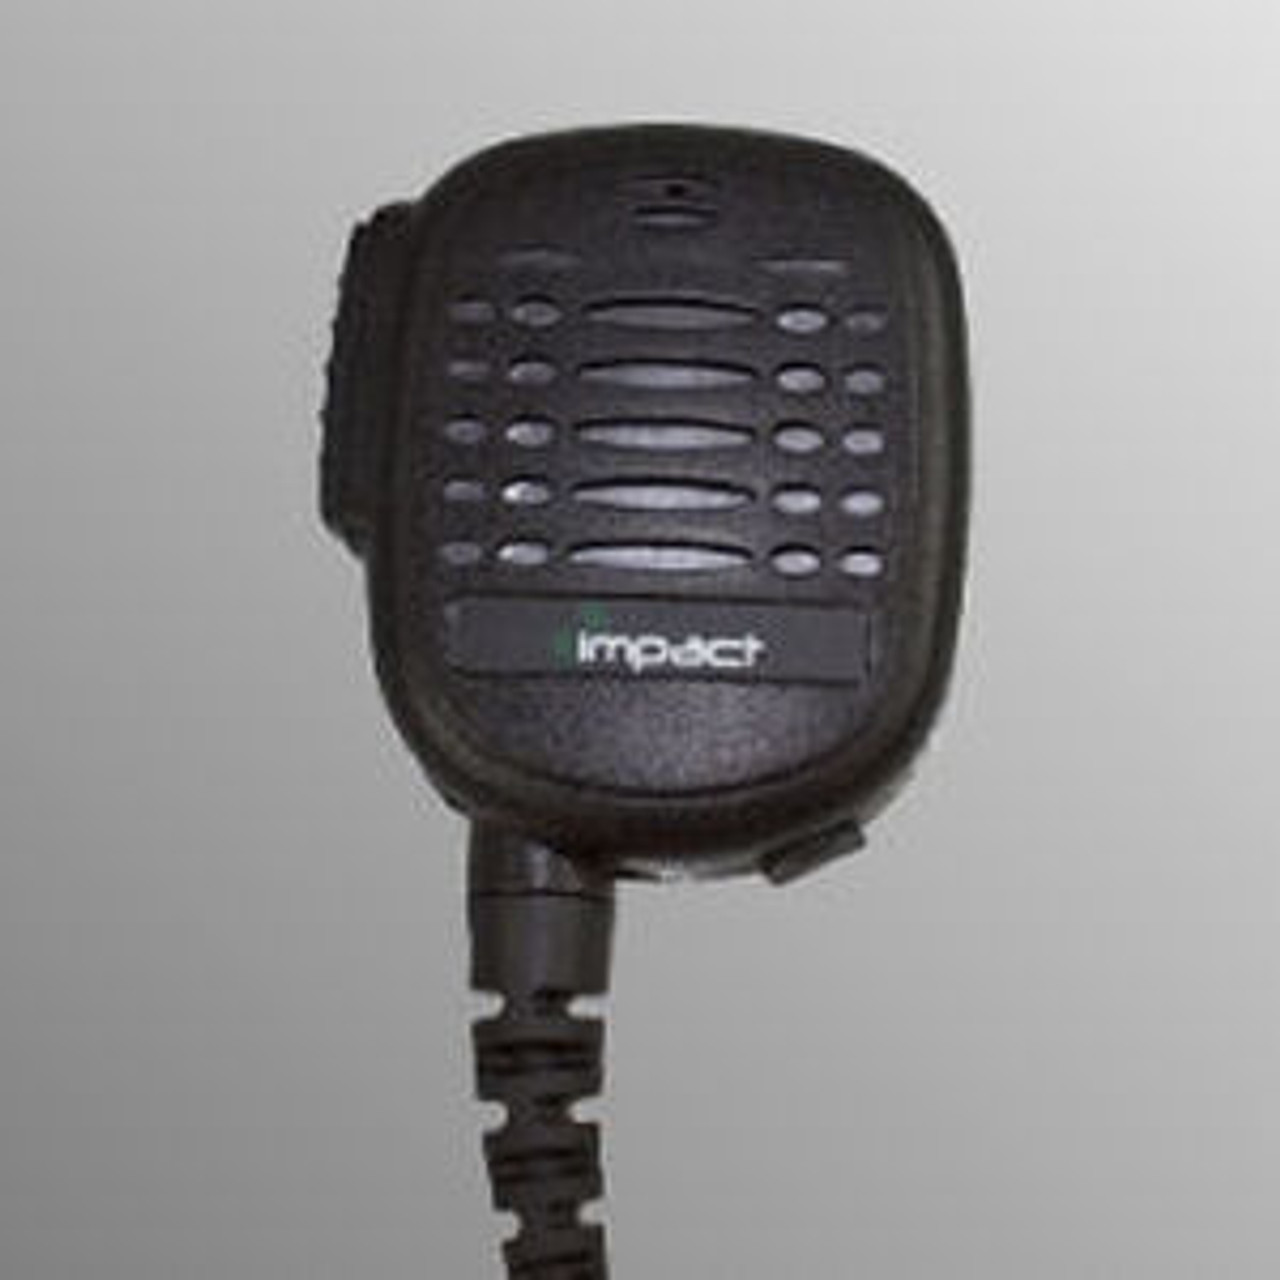 Vertex Standard VX-427 Noise Canceling Speaker Mic.